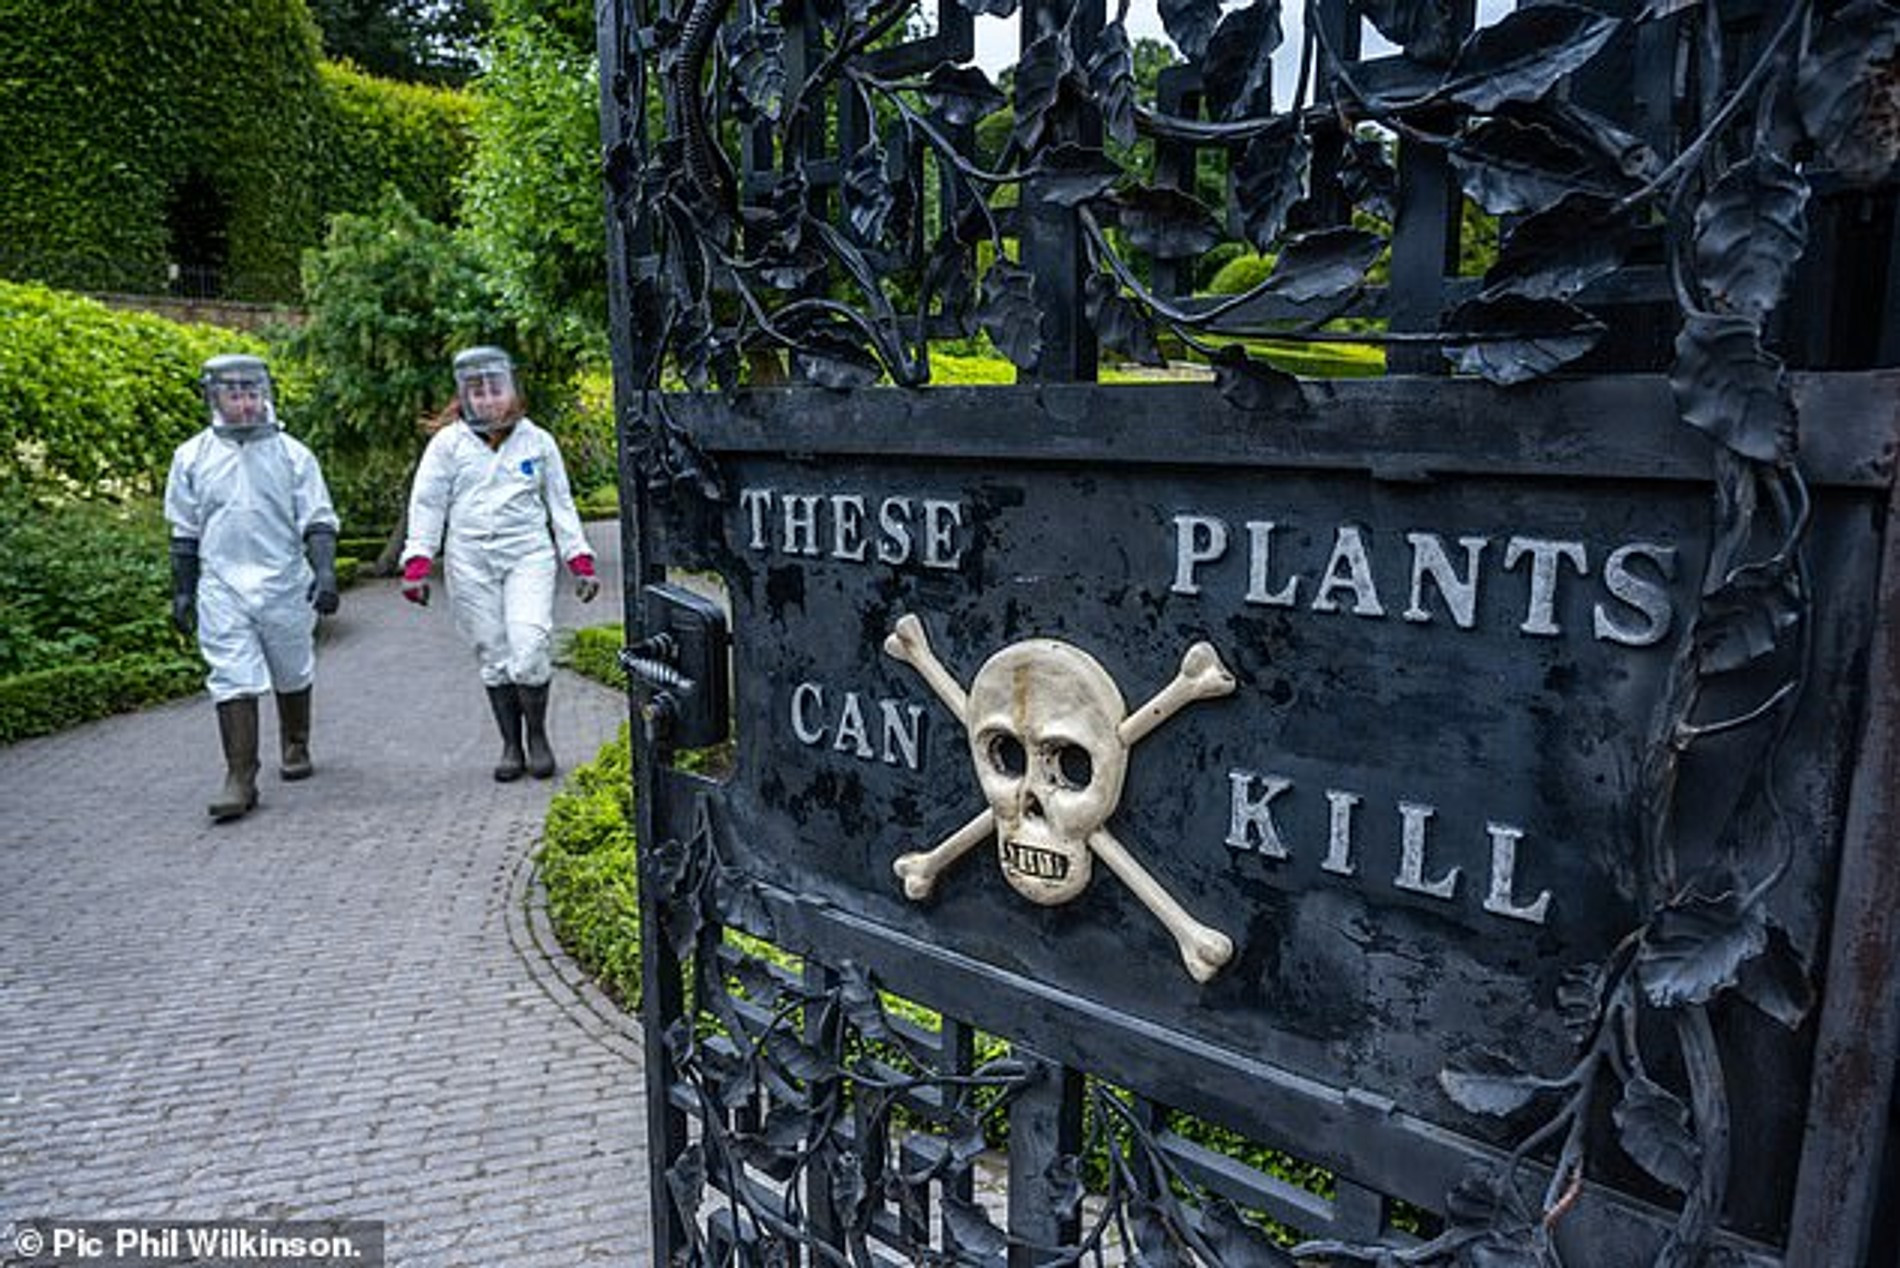 Надпись «Эти растения могут убить» на воротах, ведущих в «Ядовитый сад»
Фото: Daily Mail/Phil Wilkinson